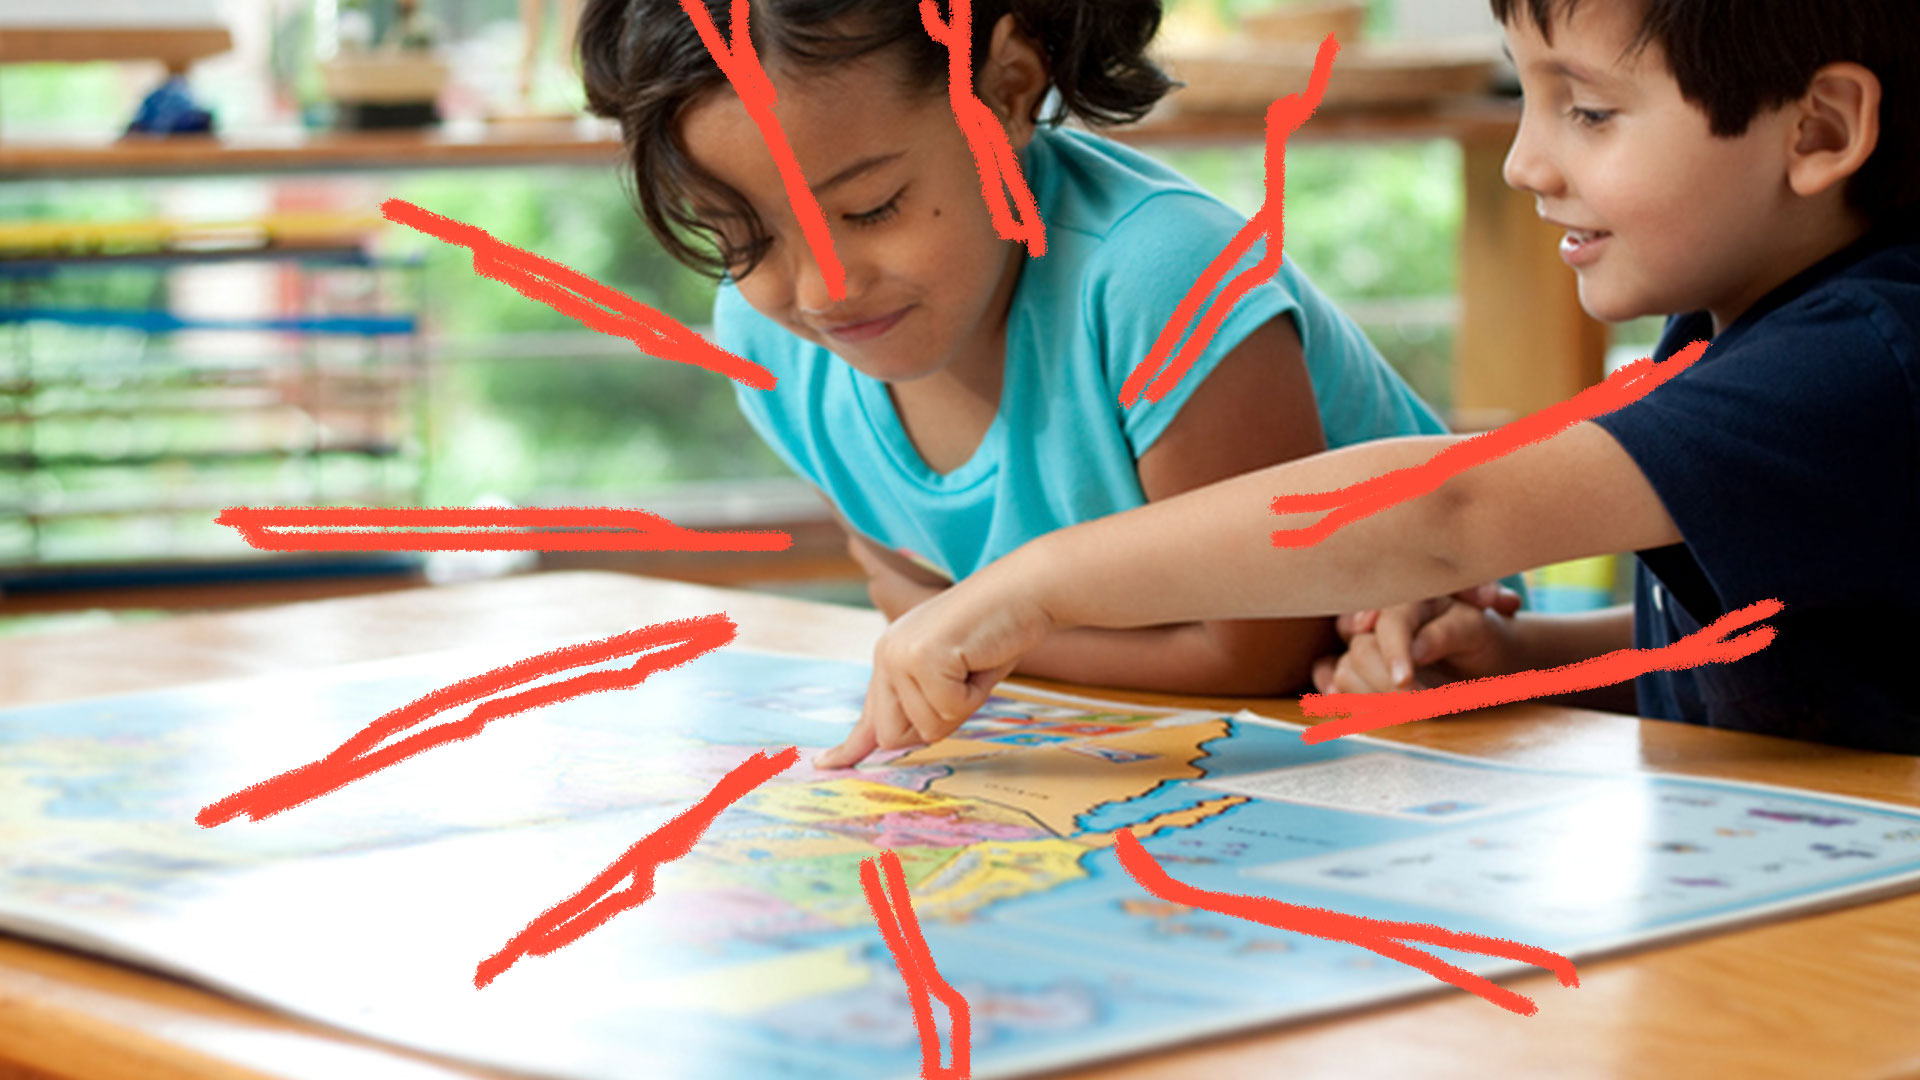 Duas crianças observam e apontam para um mapa aberto em cima de uma mesa. A esquerda está uma menina de camiseta azul clara e a direita um menino de camiseta azul escura.